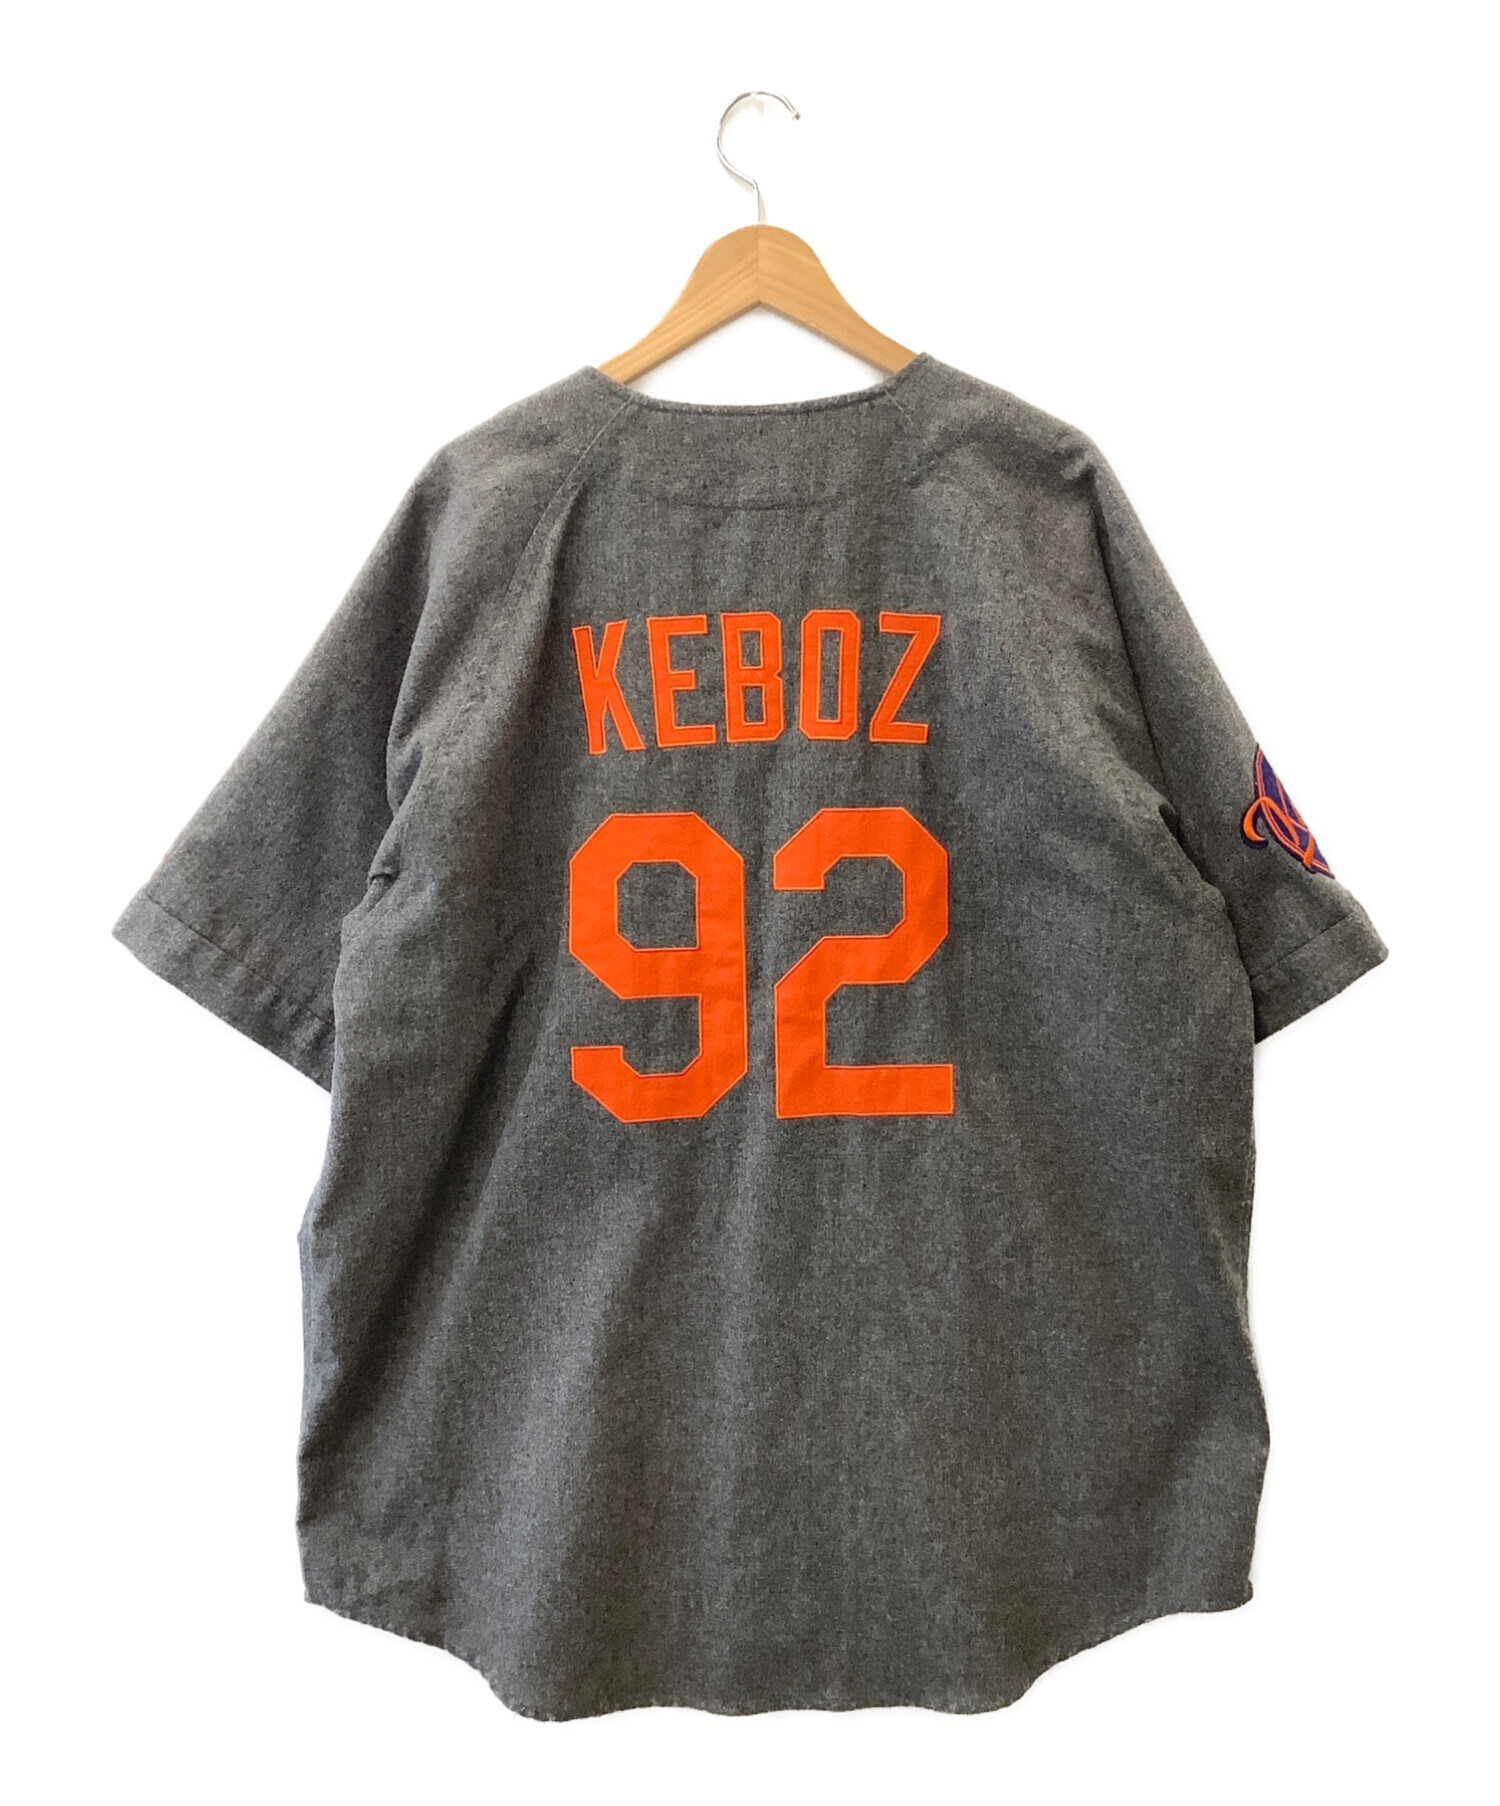 KEBOZ x FREAK´S STOREベースボールシャツ-